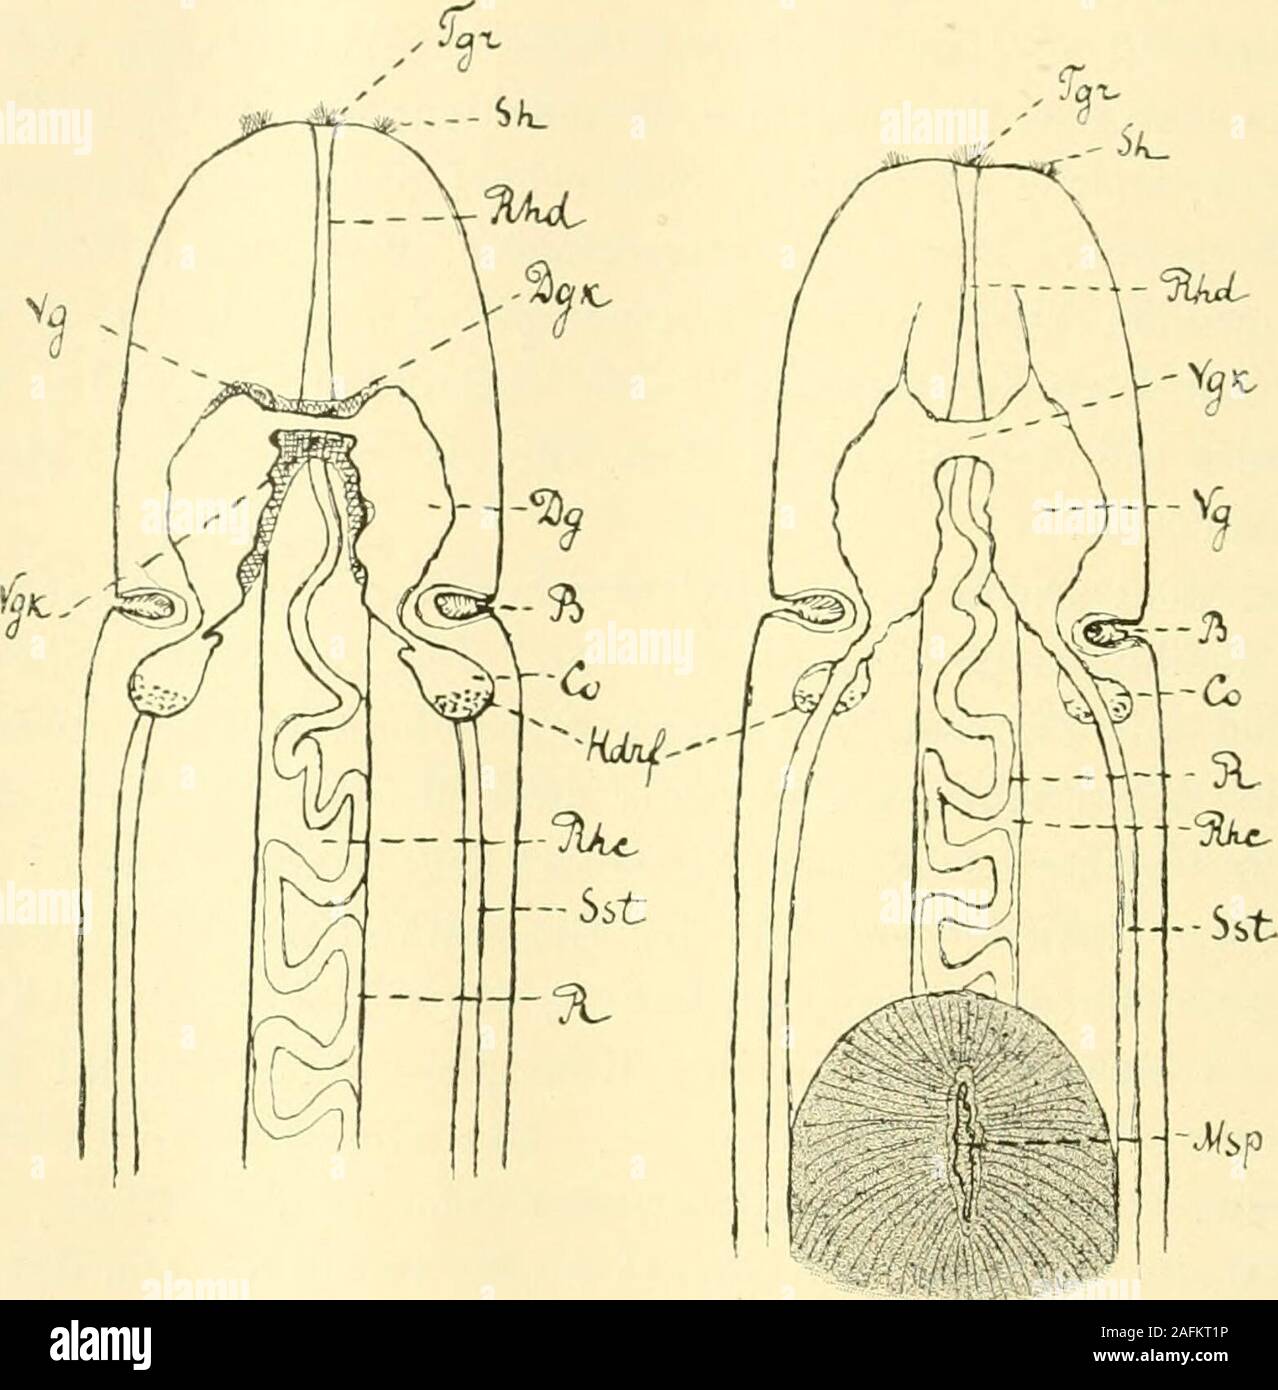 . Zeitschrift für wissenschaftliche Zoologie. ventralenGanglion entspringen zwei Nervenstränge — die Seitenstämme,welche dem Körper entlang verlaufen. Mit dem dorsalen Ganglion sindeigenartige Gebilde — die Cerebralorgane — verwachsen. Wasdas centrale Nervensystem anbetrifft, so kann man hier die Rindevon der centralen Substanz unterscheiden. Das periphere Nervensystembesteht aus Nerven und »Nervenschichten« (Bürger). Zu den ersterengehören die Rücken-, Schlund-, Kopf- und Rüsselnerven. Die Cerebralorgane und ihre erweiterten Mündungen — lang unddicht bewimperte Buchten — bilden die Sinnesorga Stock Photo